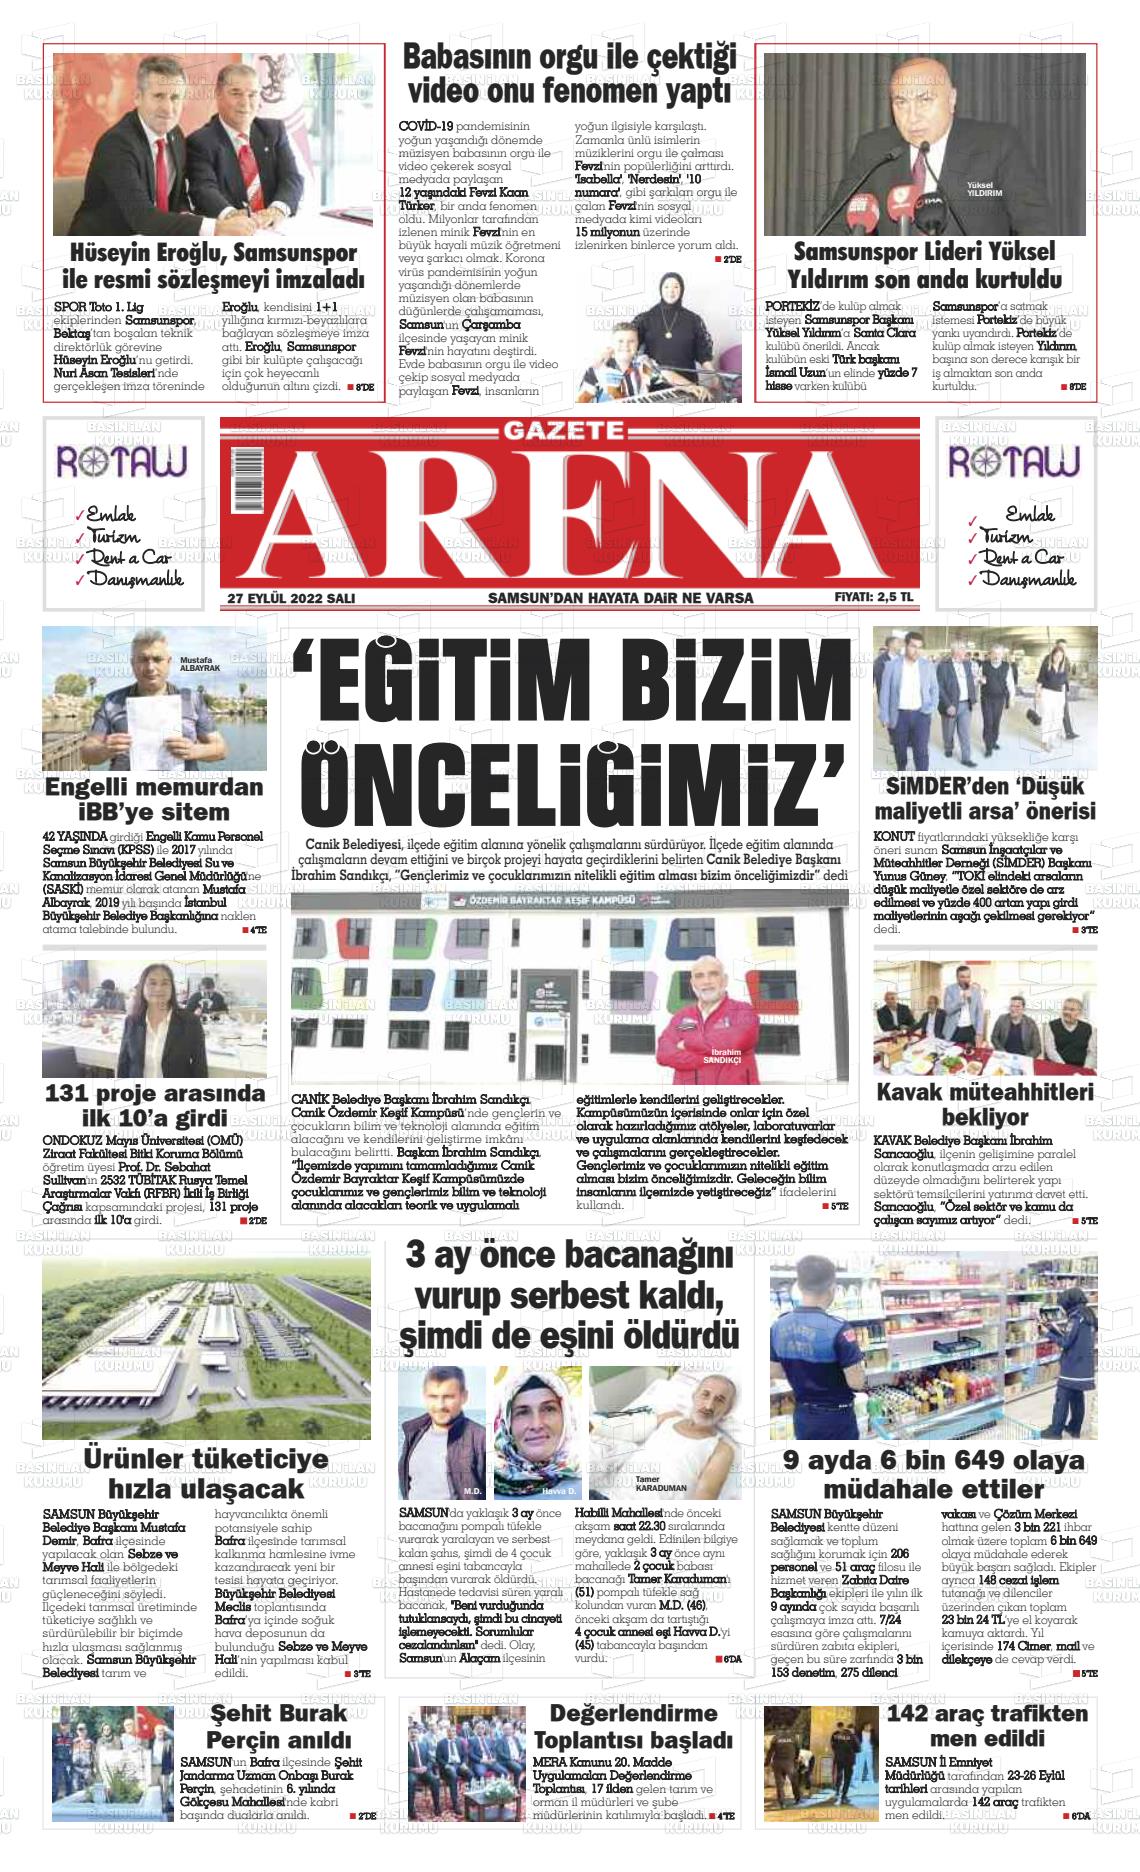 27 Eylül 2022 Arena Gazete Manşeti